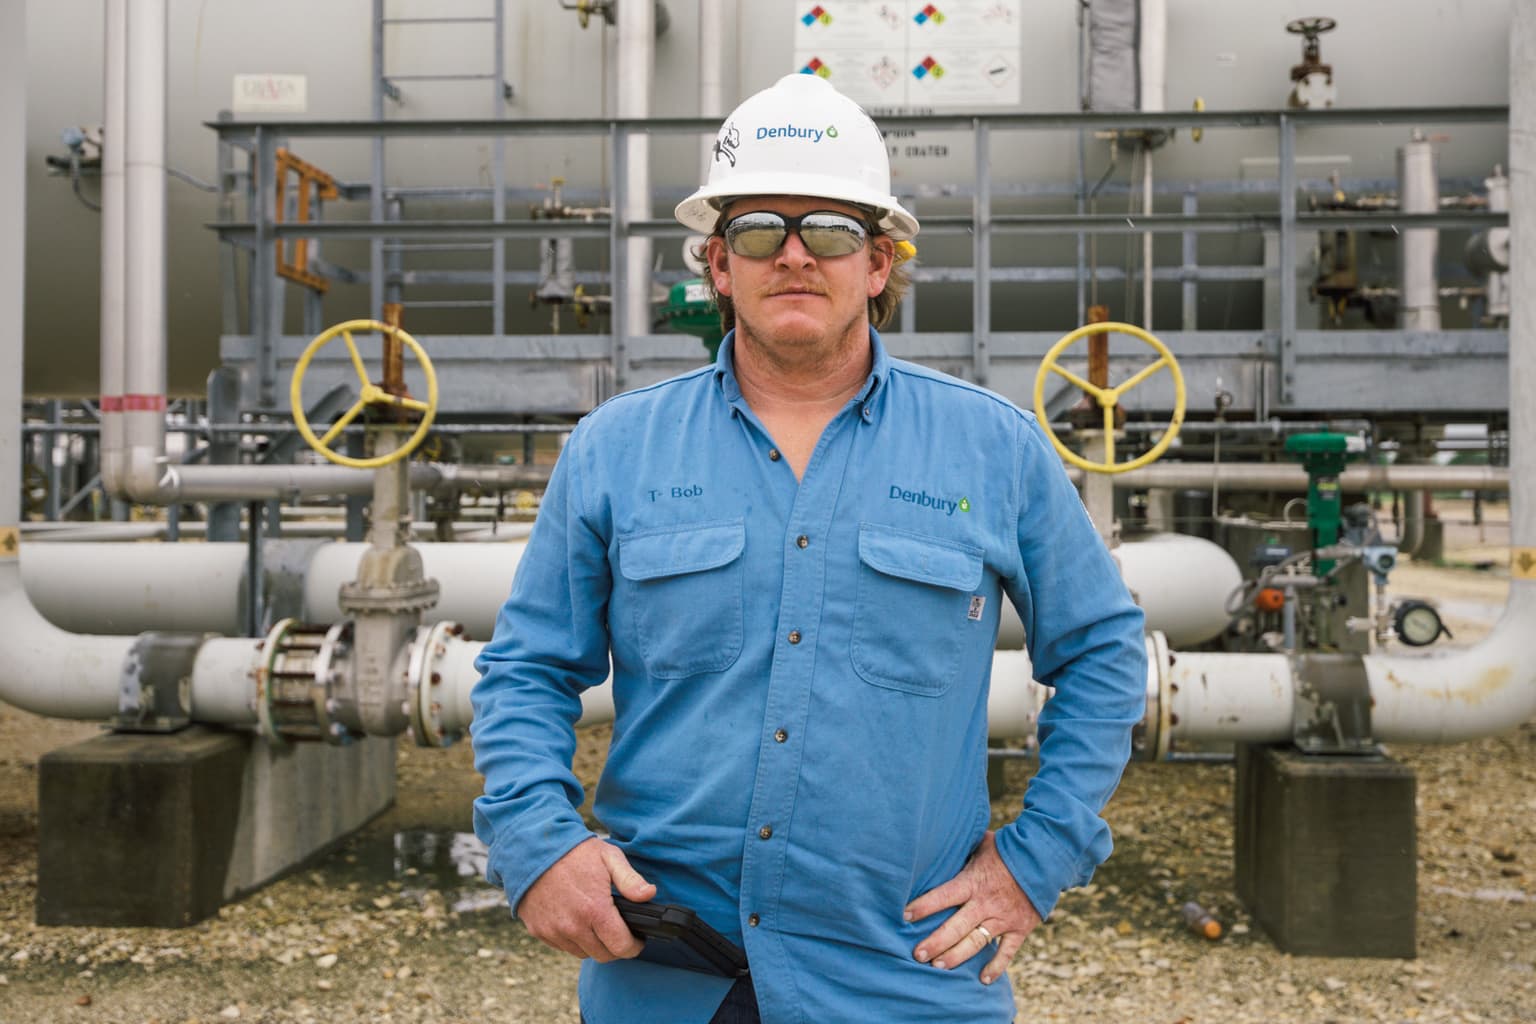 Portrait of an oil worker